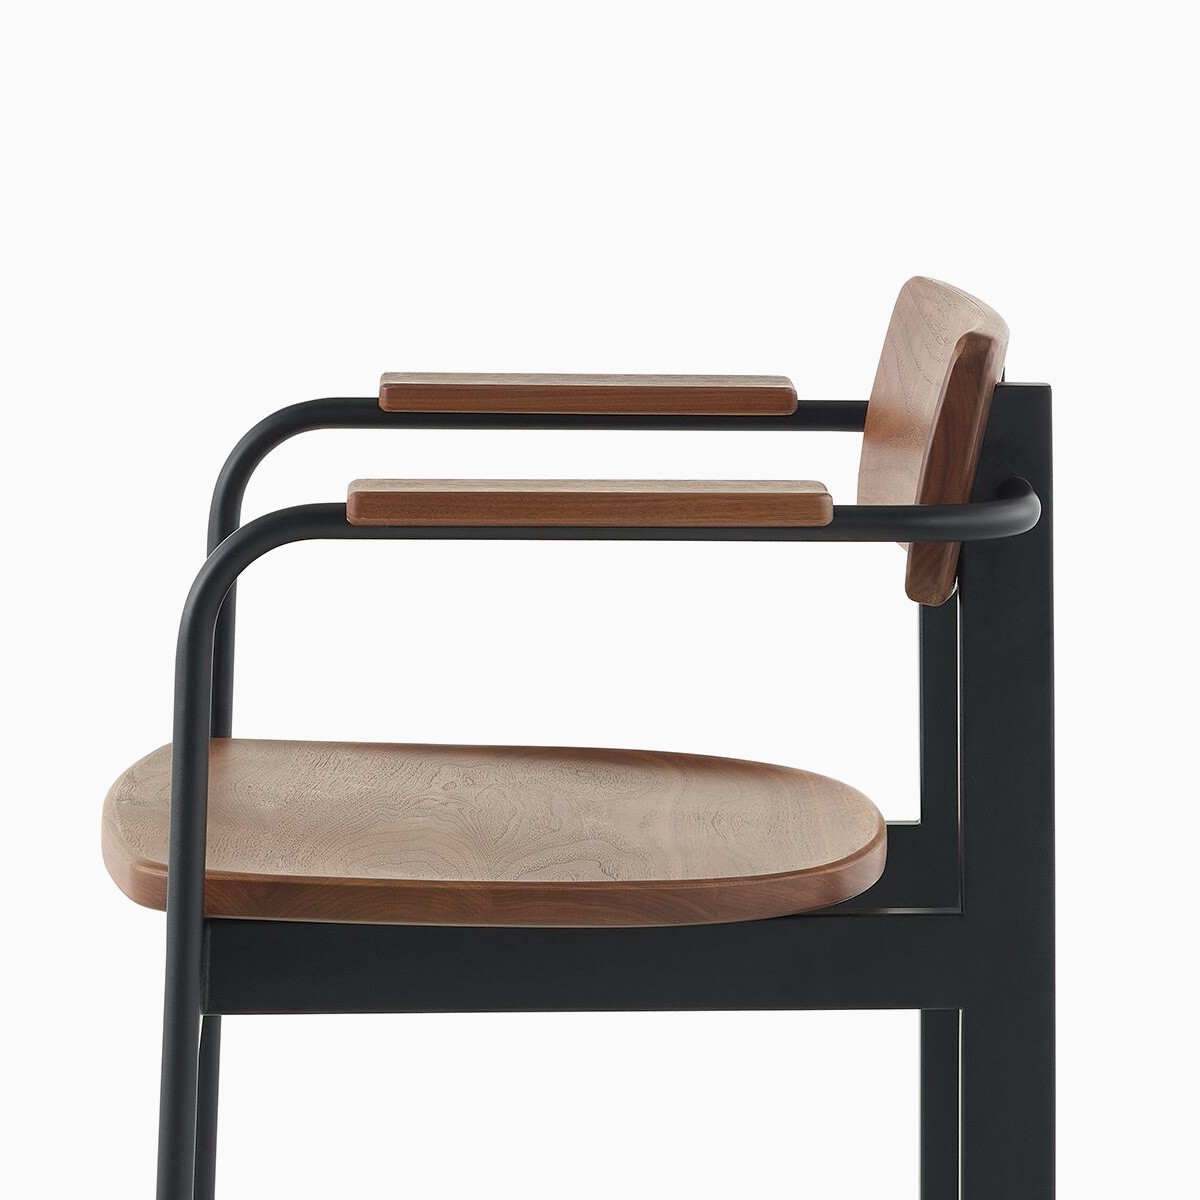 Een Betwixt-stoel met een walnoot rugleuning, zitting en armleuningen met een zwart frame.